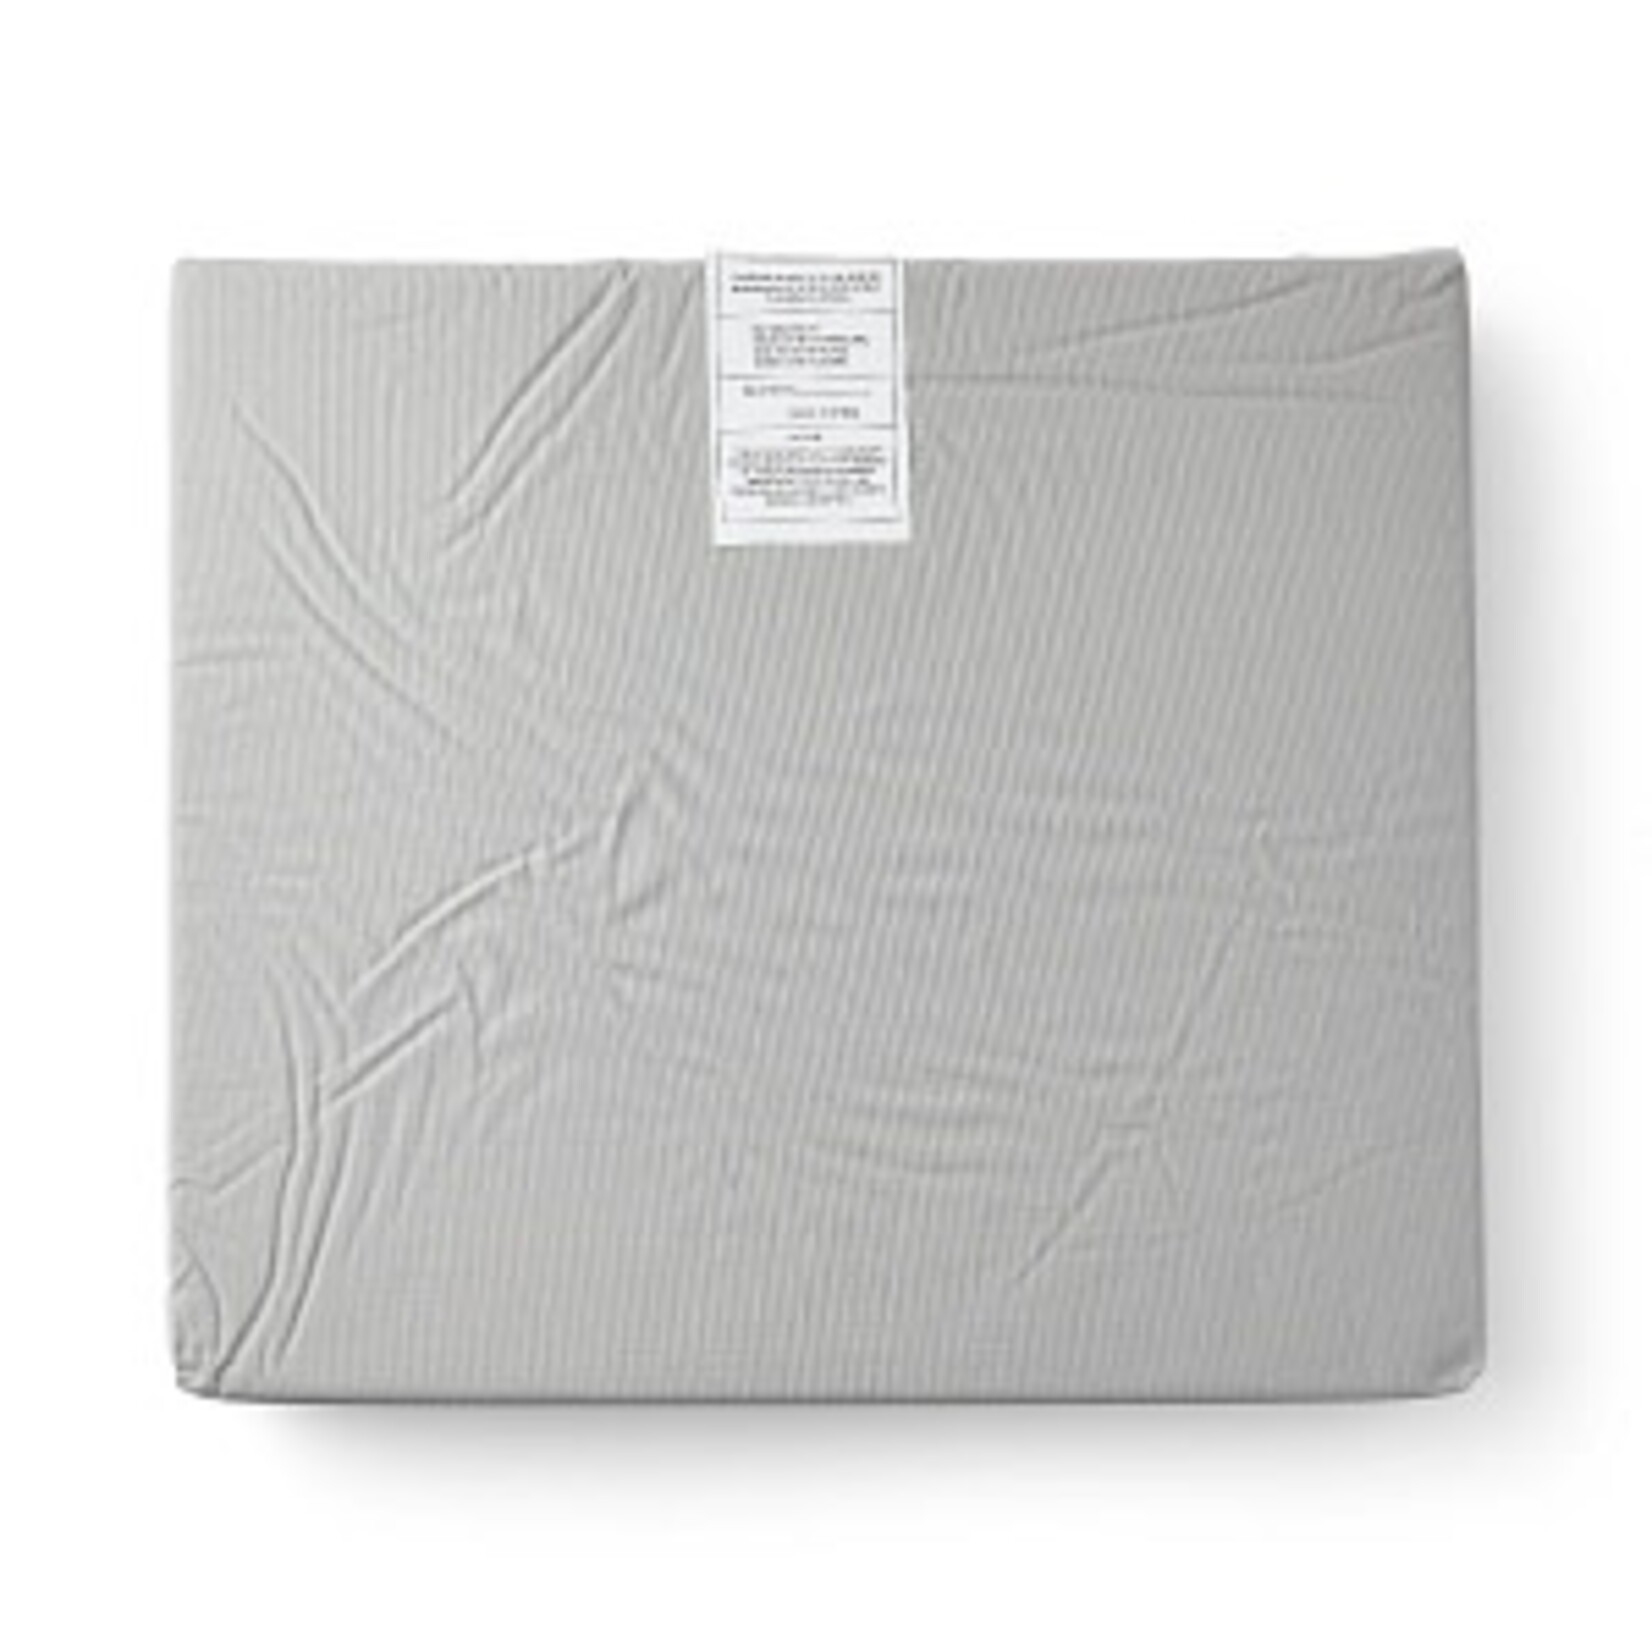 Medline Comfort Foam Cushions